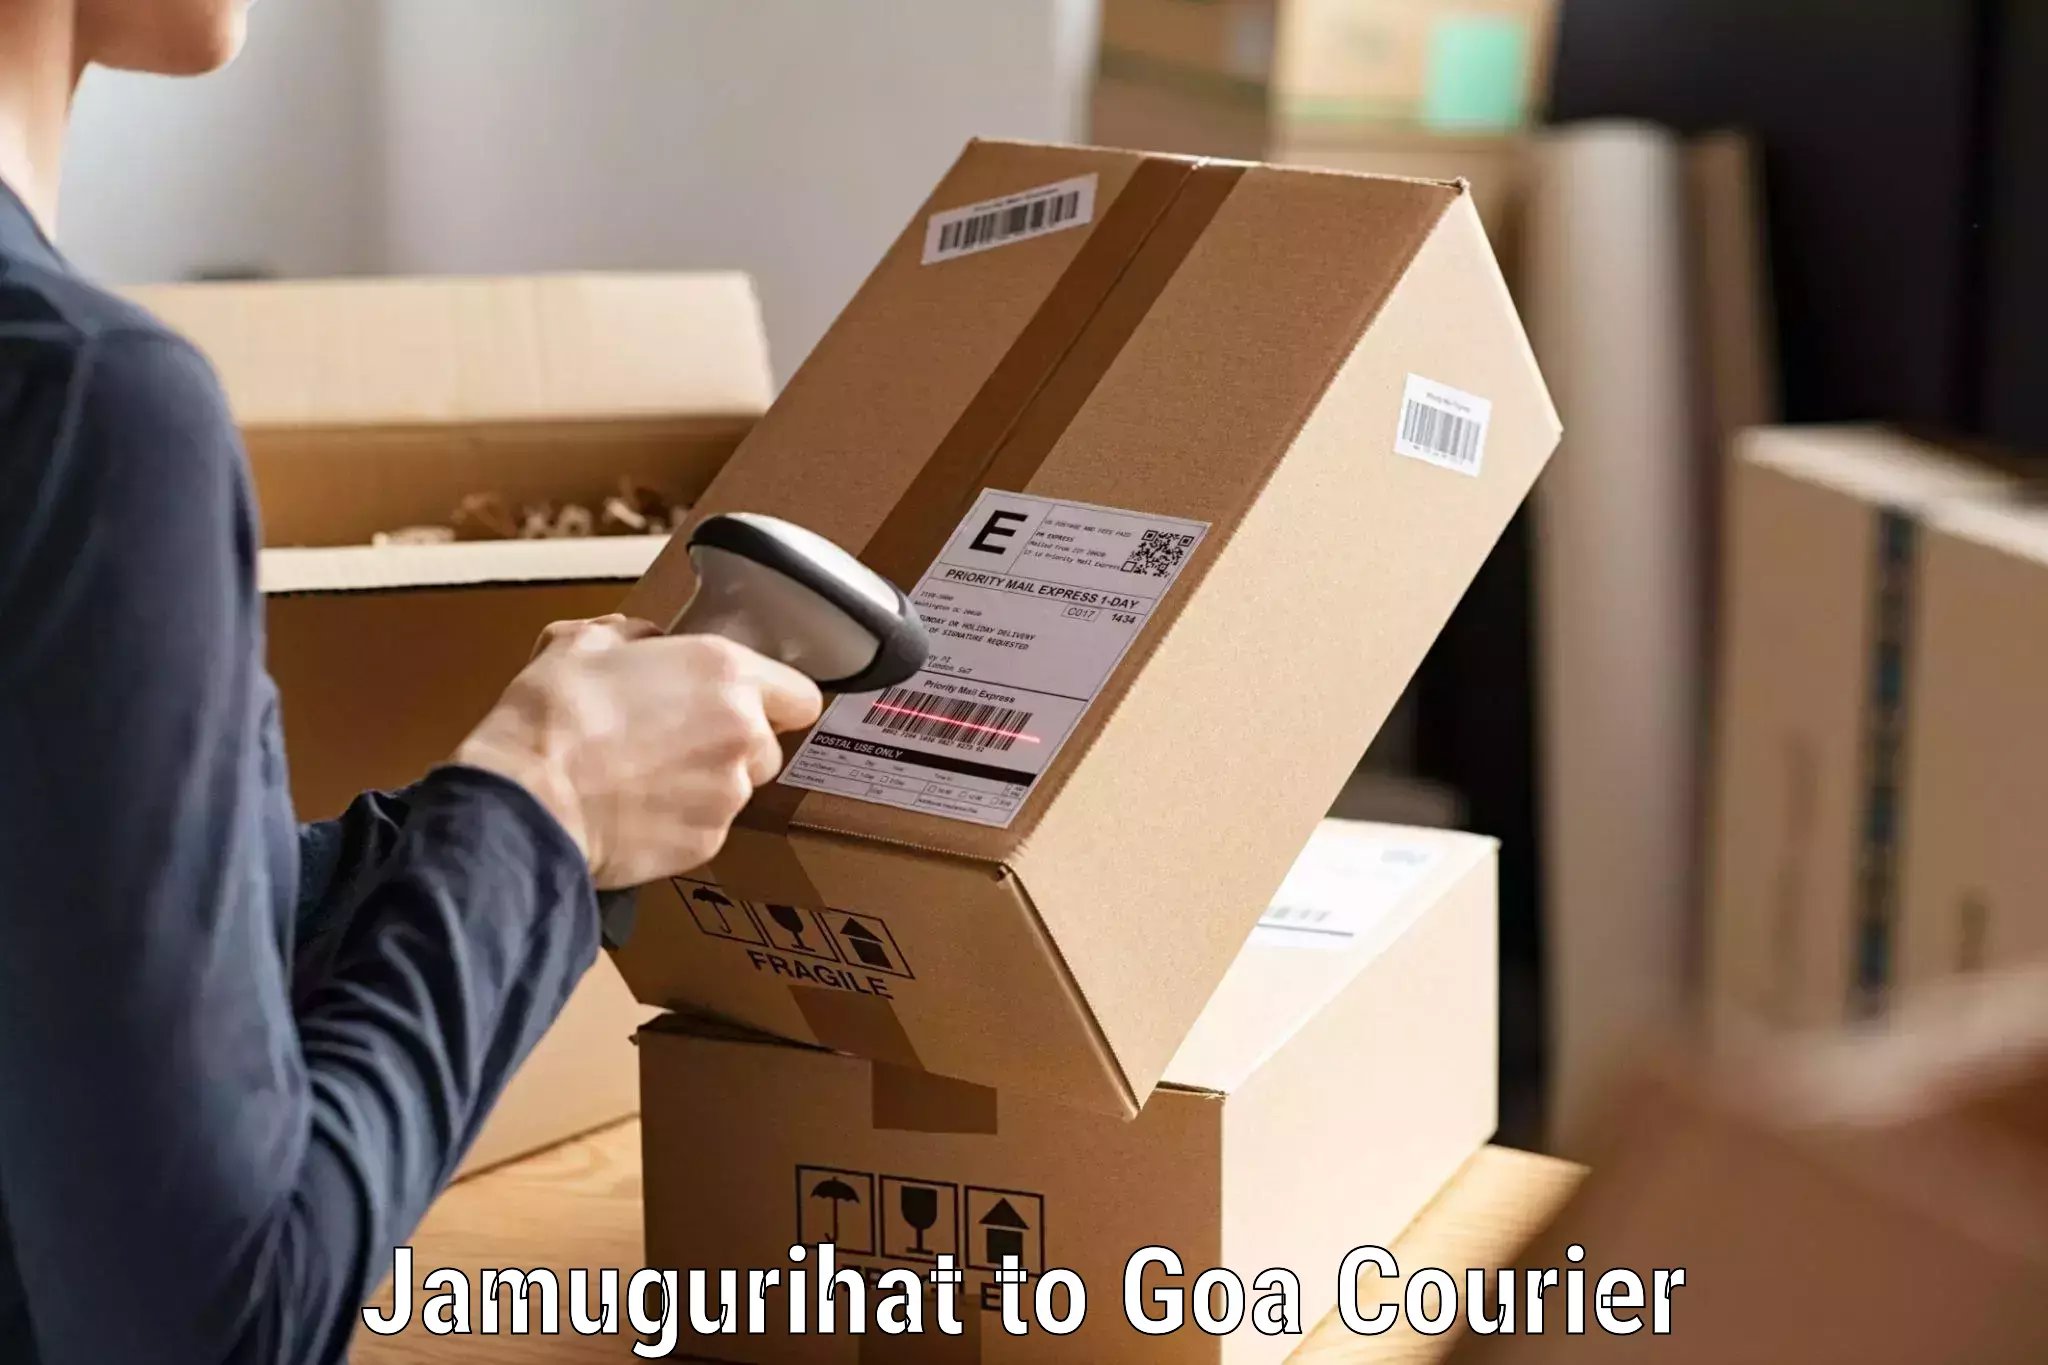 Specialized shipment handling Jamugurihat to NIT Goa